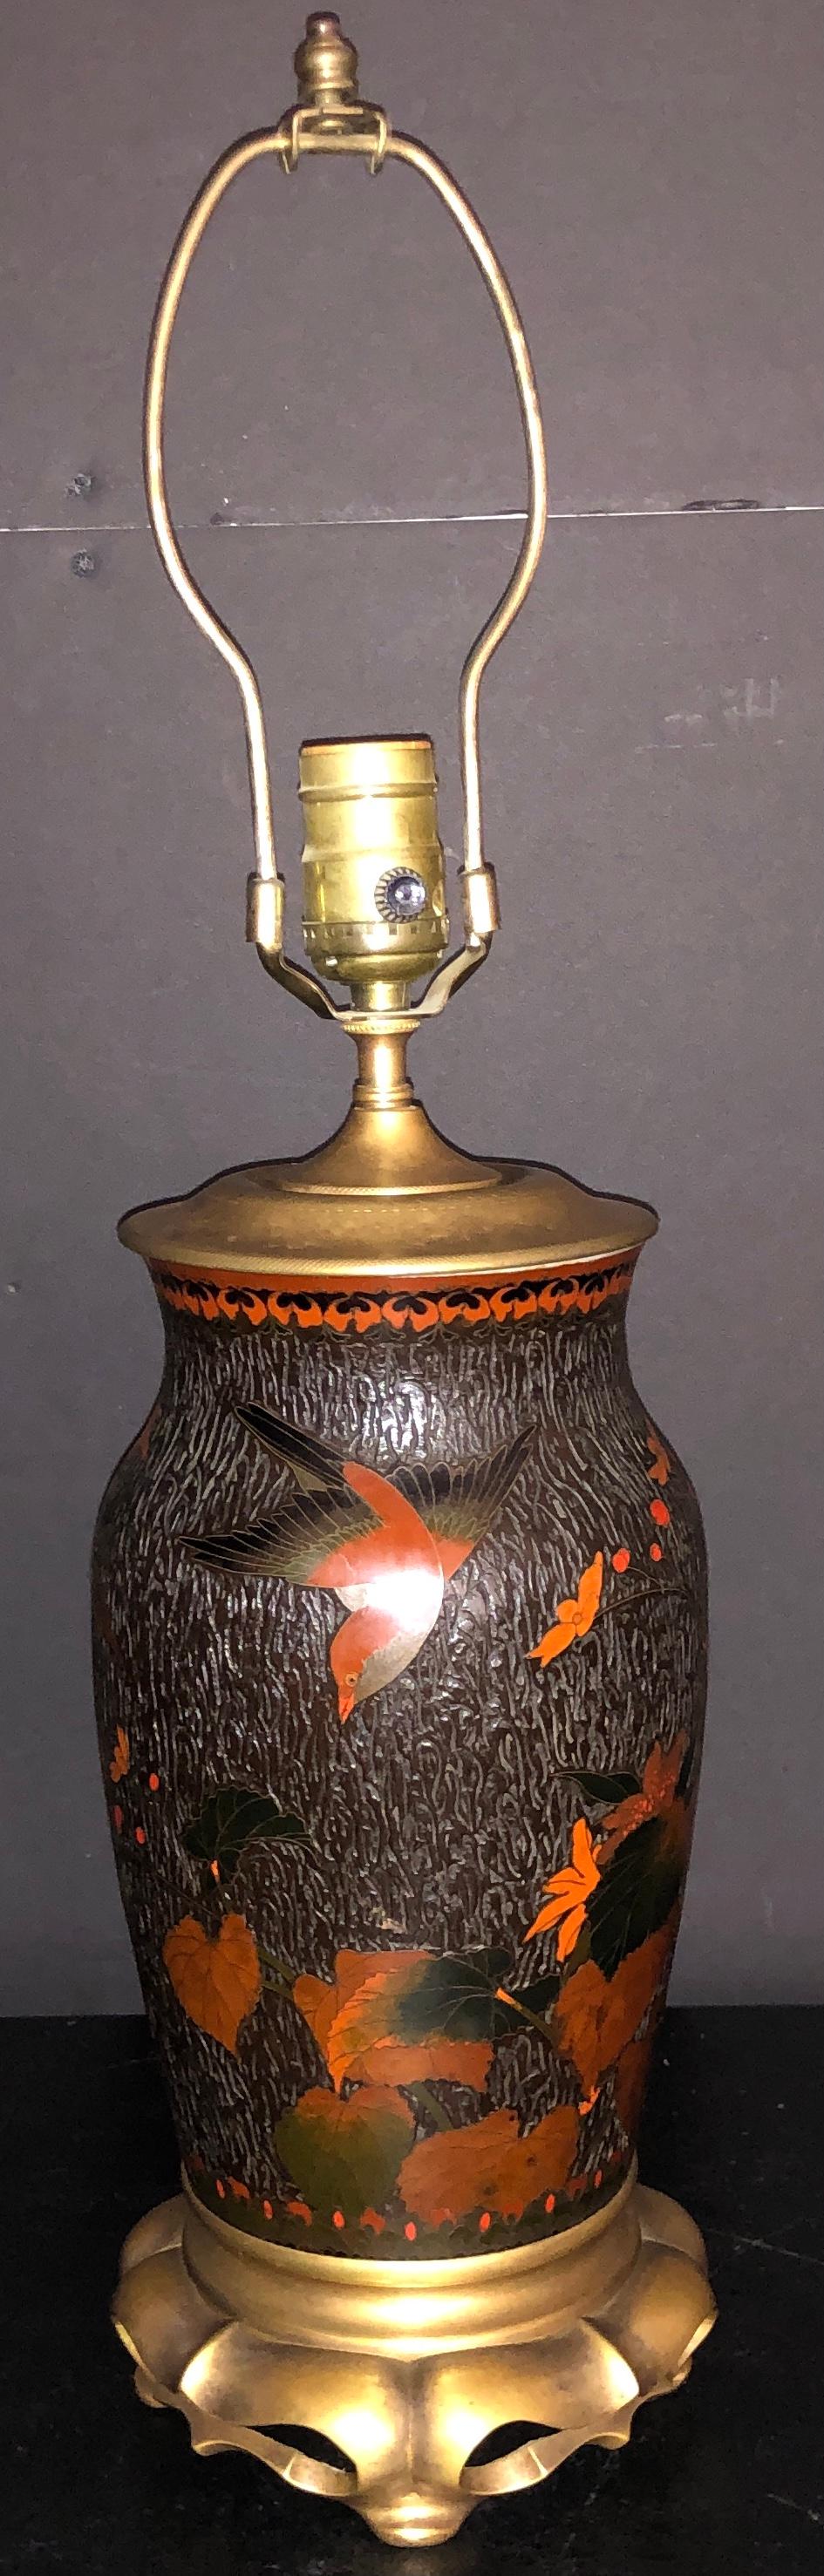 Antique vase Cloissoné en écorce d'arbre Totai Shippo du 19e siècle monté en lampe sur une base en bronze doré. Période Meiji.
13